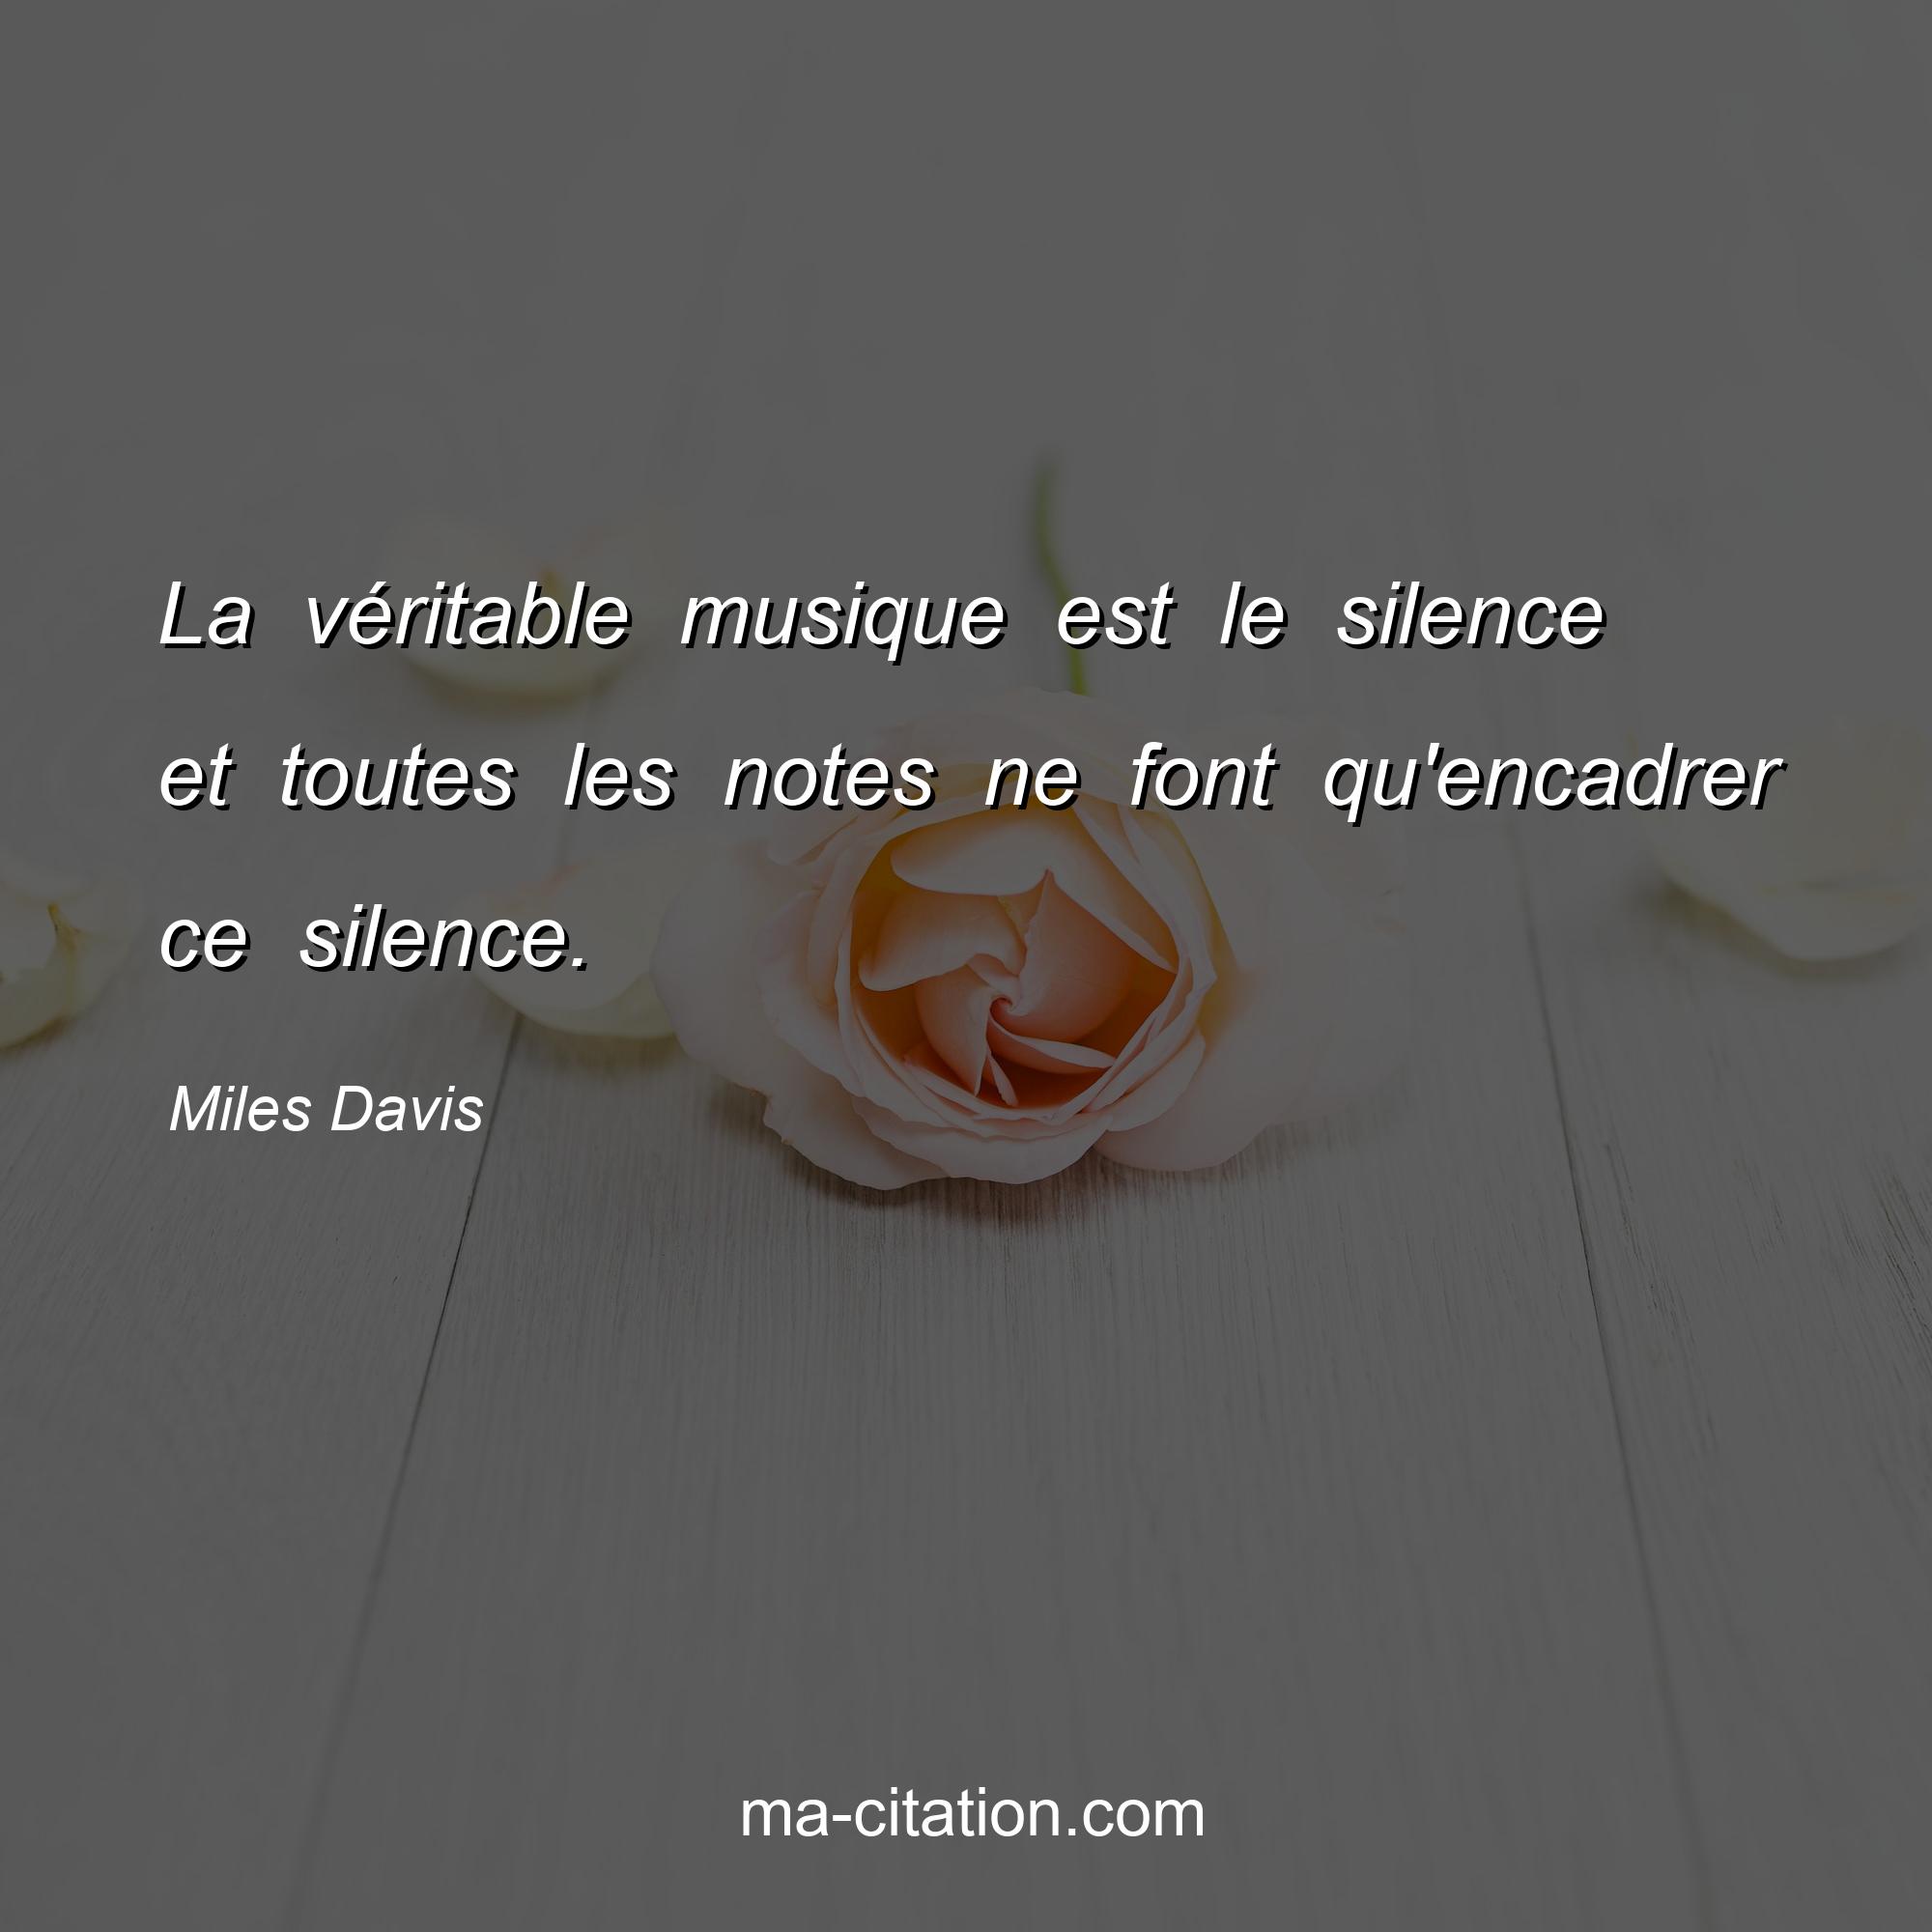 Miles Davis : La véritable musique est le silence et toutes les notes ne font qu'encadrer ce silence.